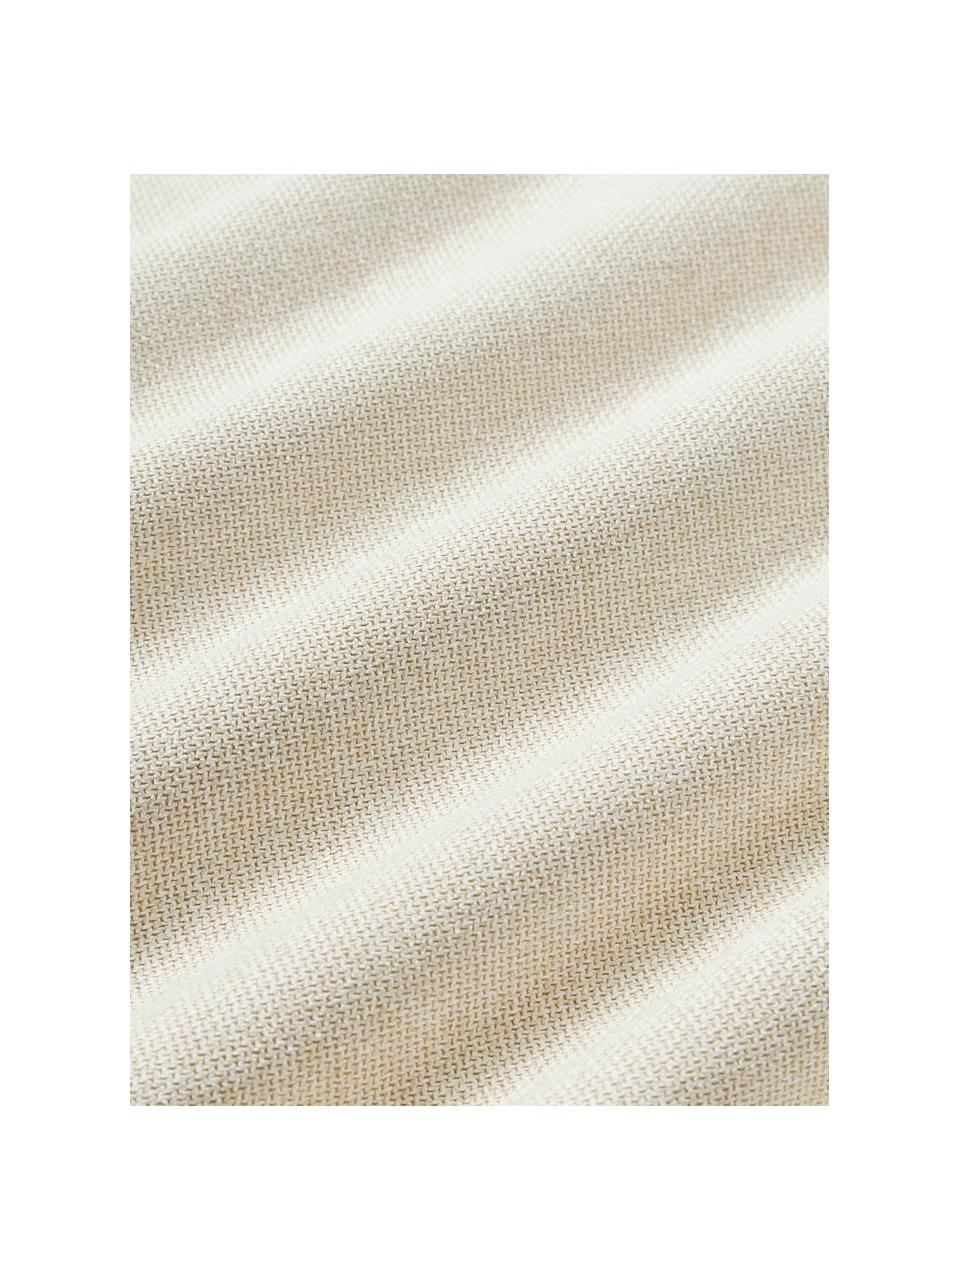 Poduszka Lennon, Tkanina w odcieniu złamanej bieli, S 80 x D 50 cm